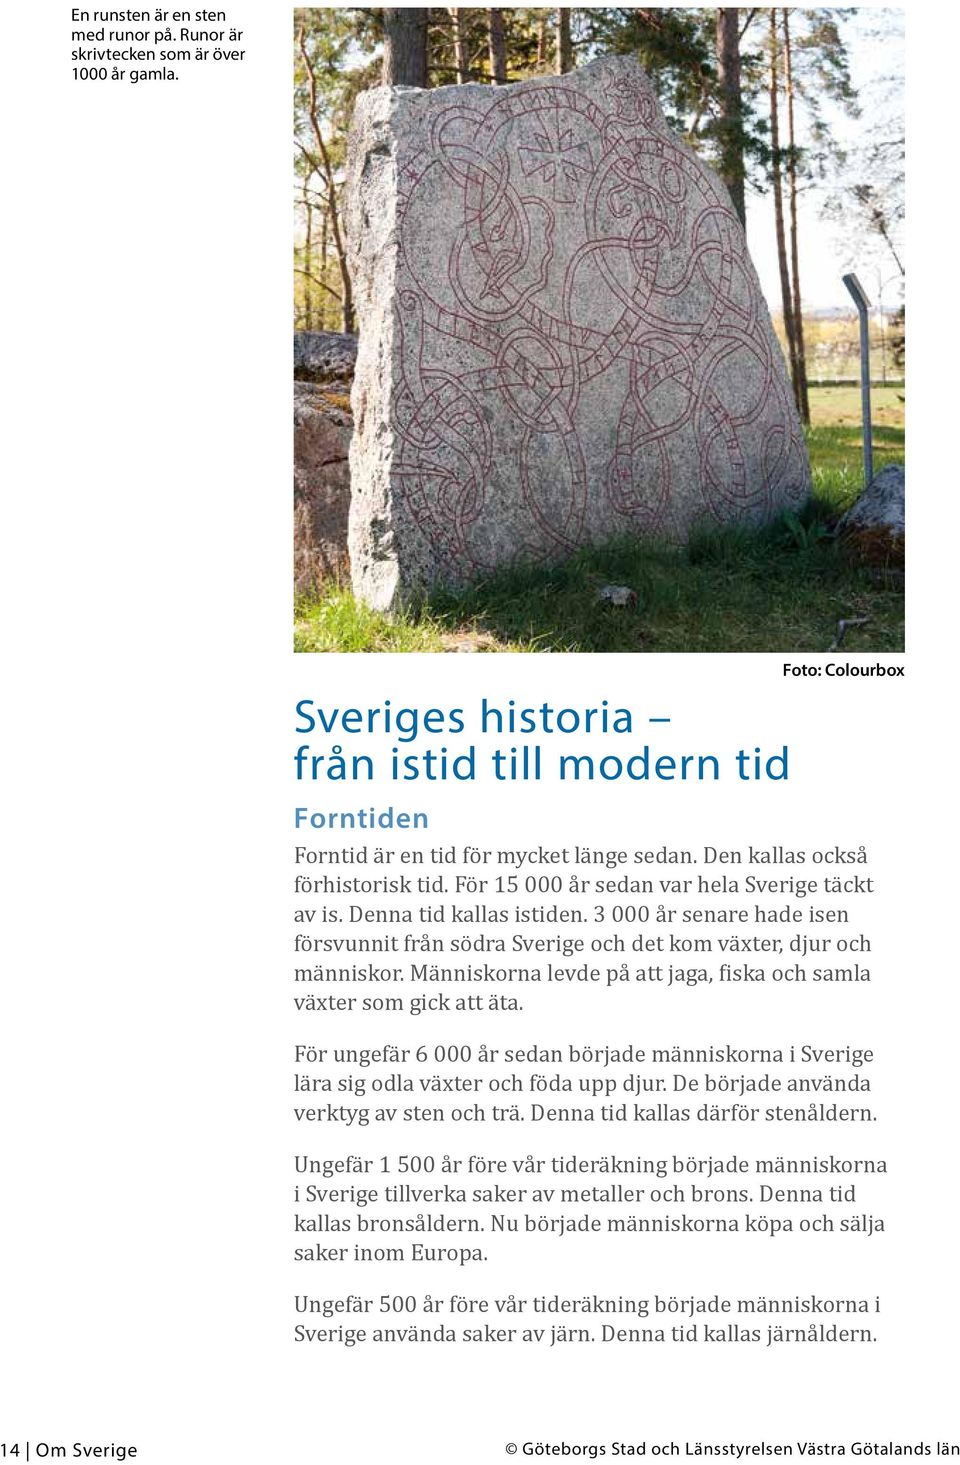 3 000 år senare hade isen försvunnit från södra Sverige och det kom växter, djur och människor. Människorna levde på att jaga, fiska och samla växter som gick att äta.